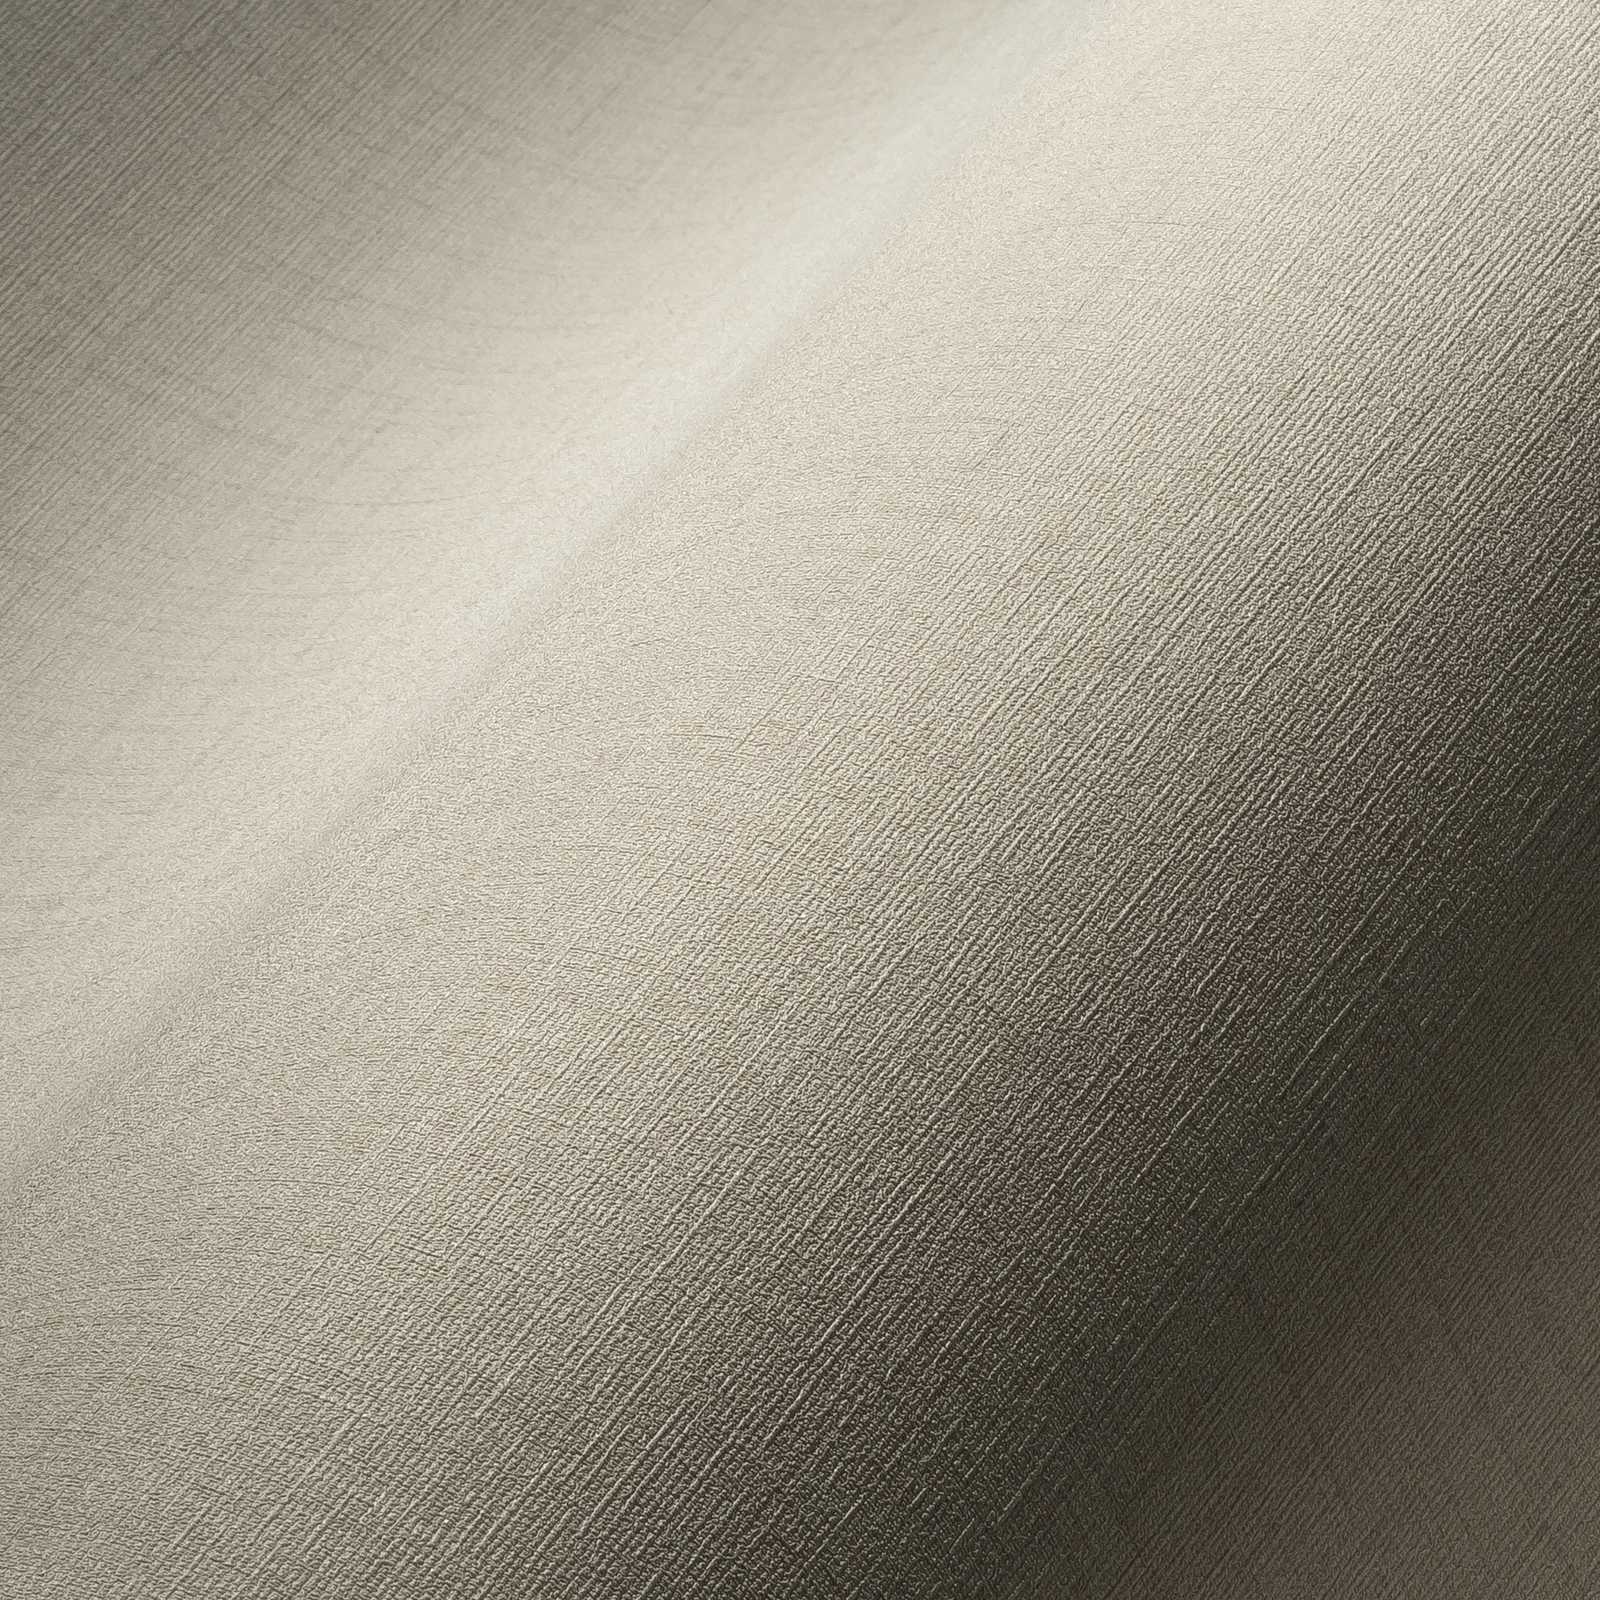             behang effen beige met textielstructuur - grijs
        